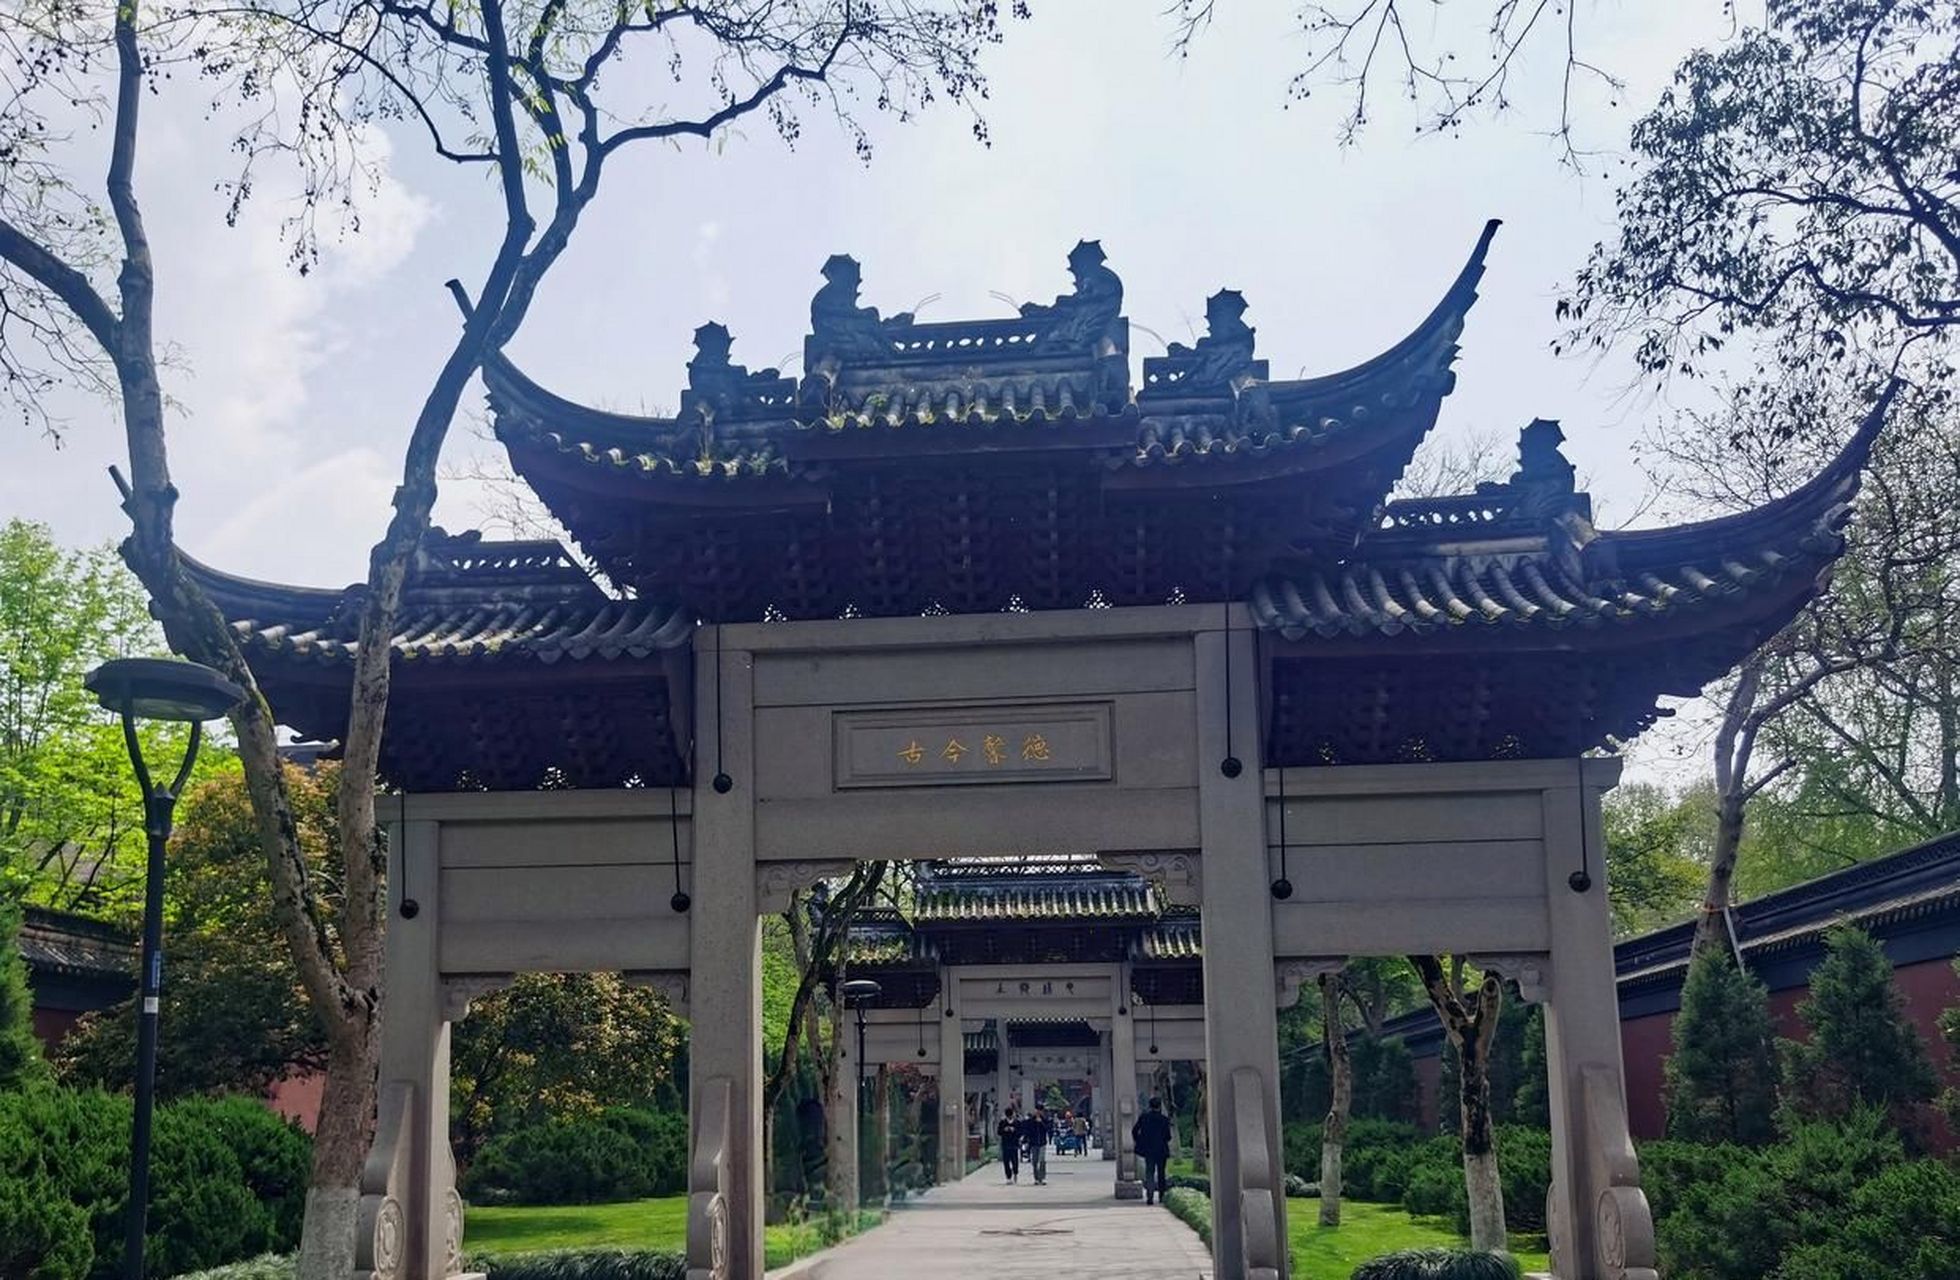 杭州西湖柳浪闻莺公园内的钱王祠,是后人为纪念吴越国钱王功绩而建造